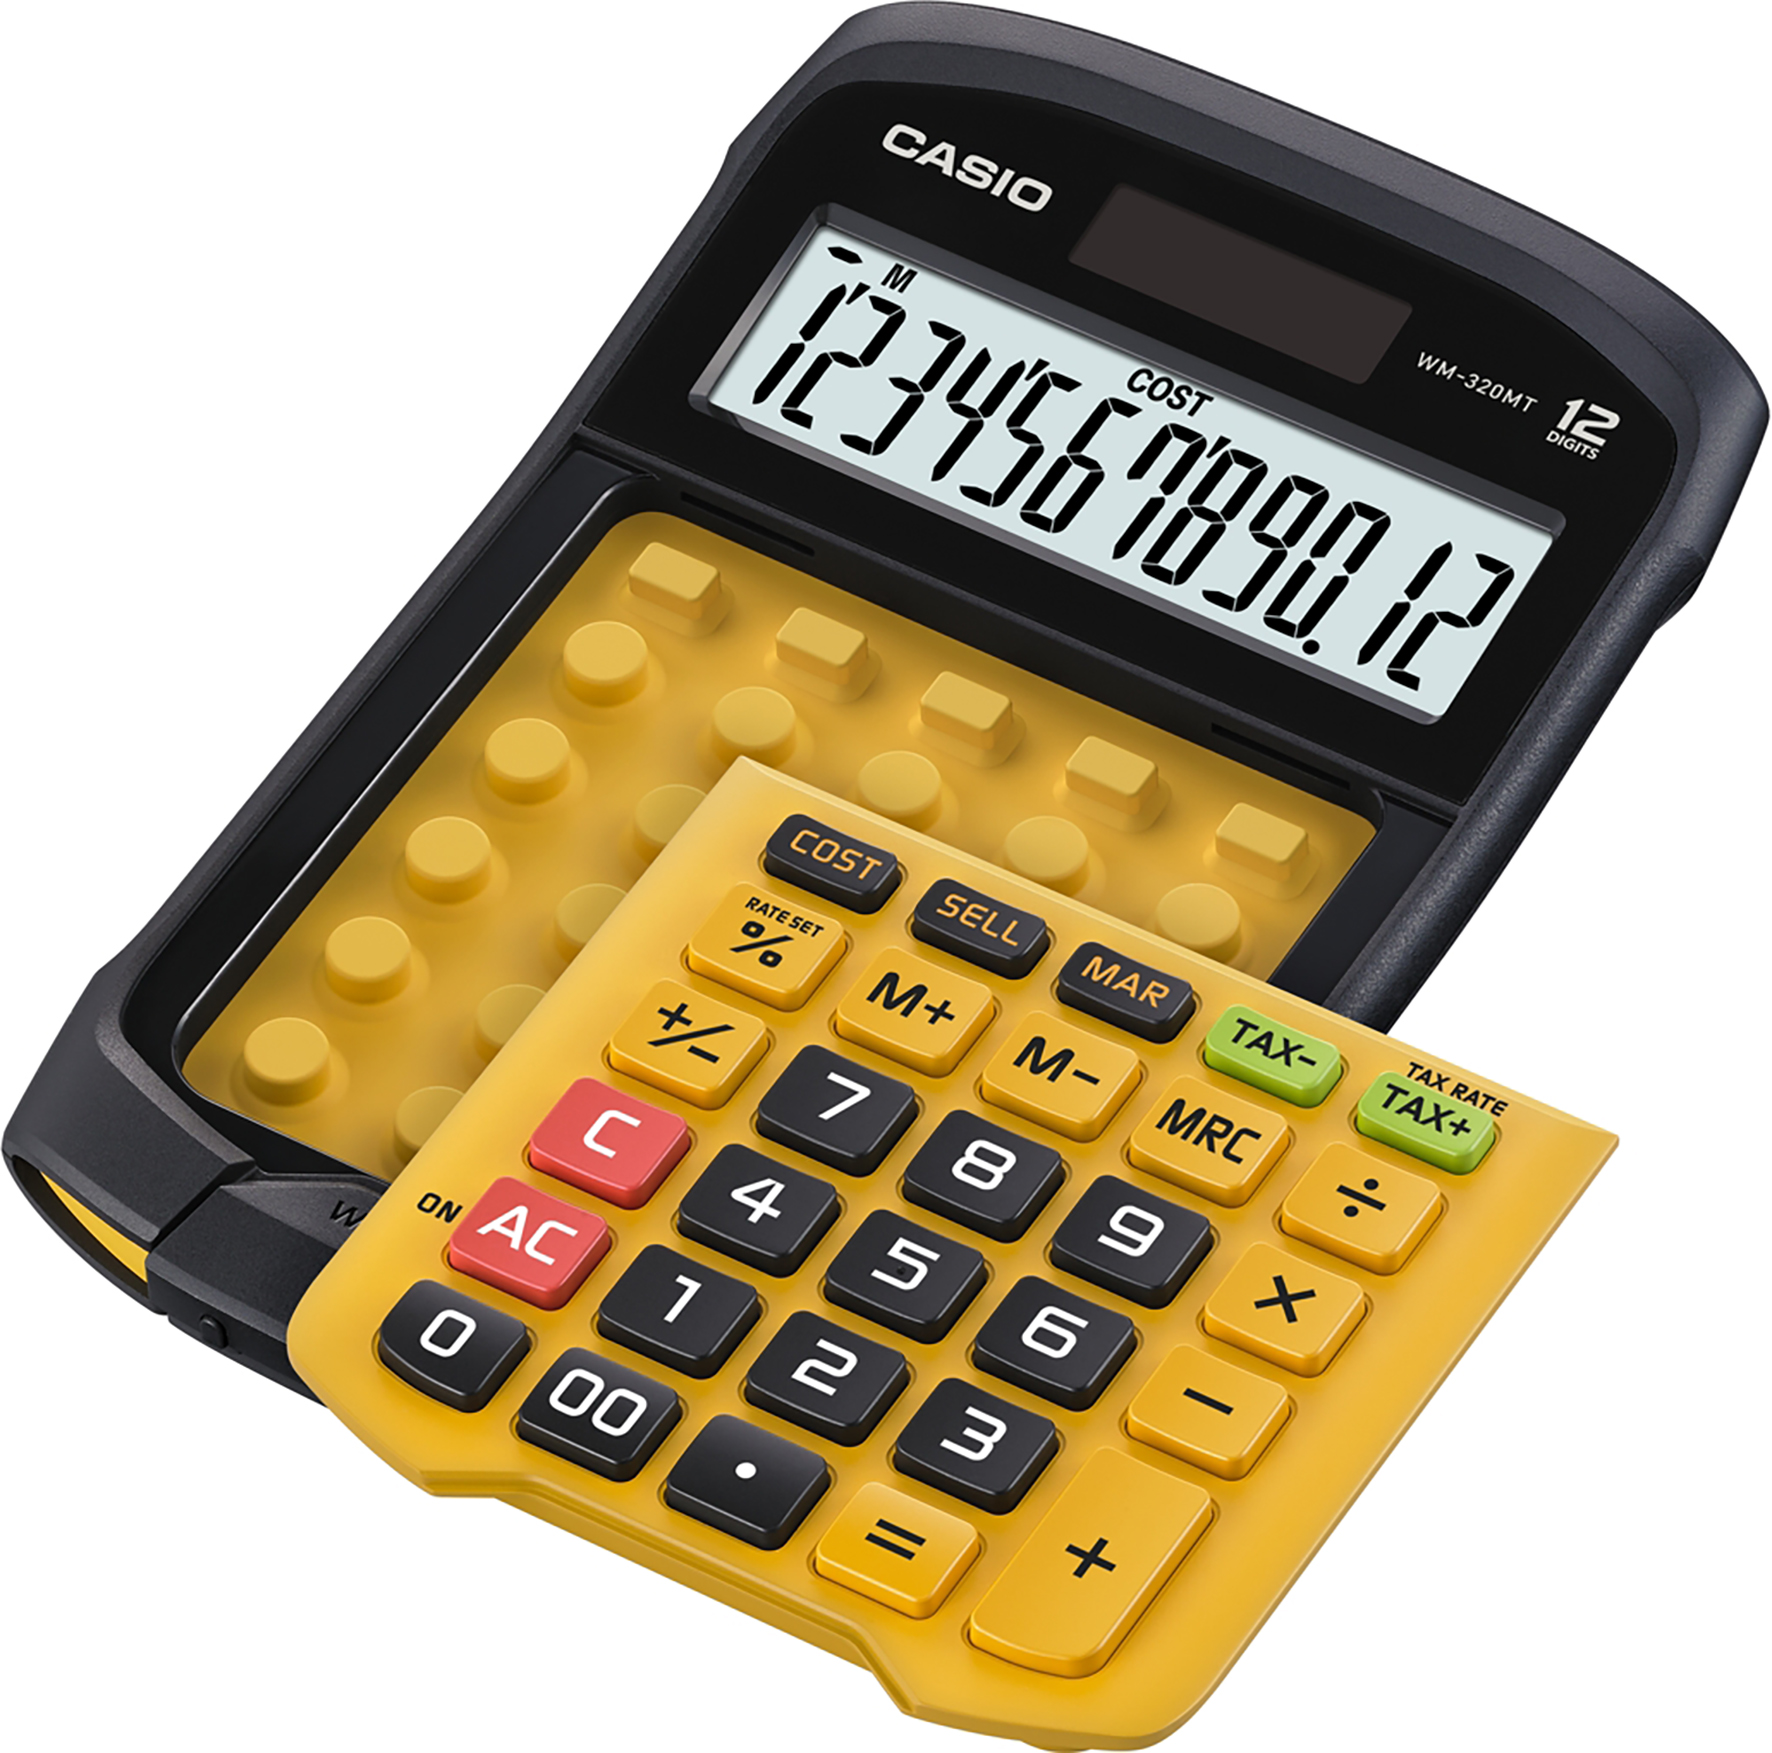 [2450306] Bordsräknare Casio WM-320MT